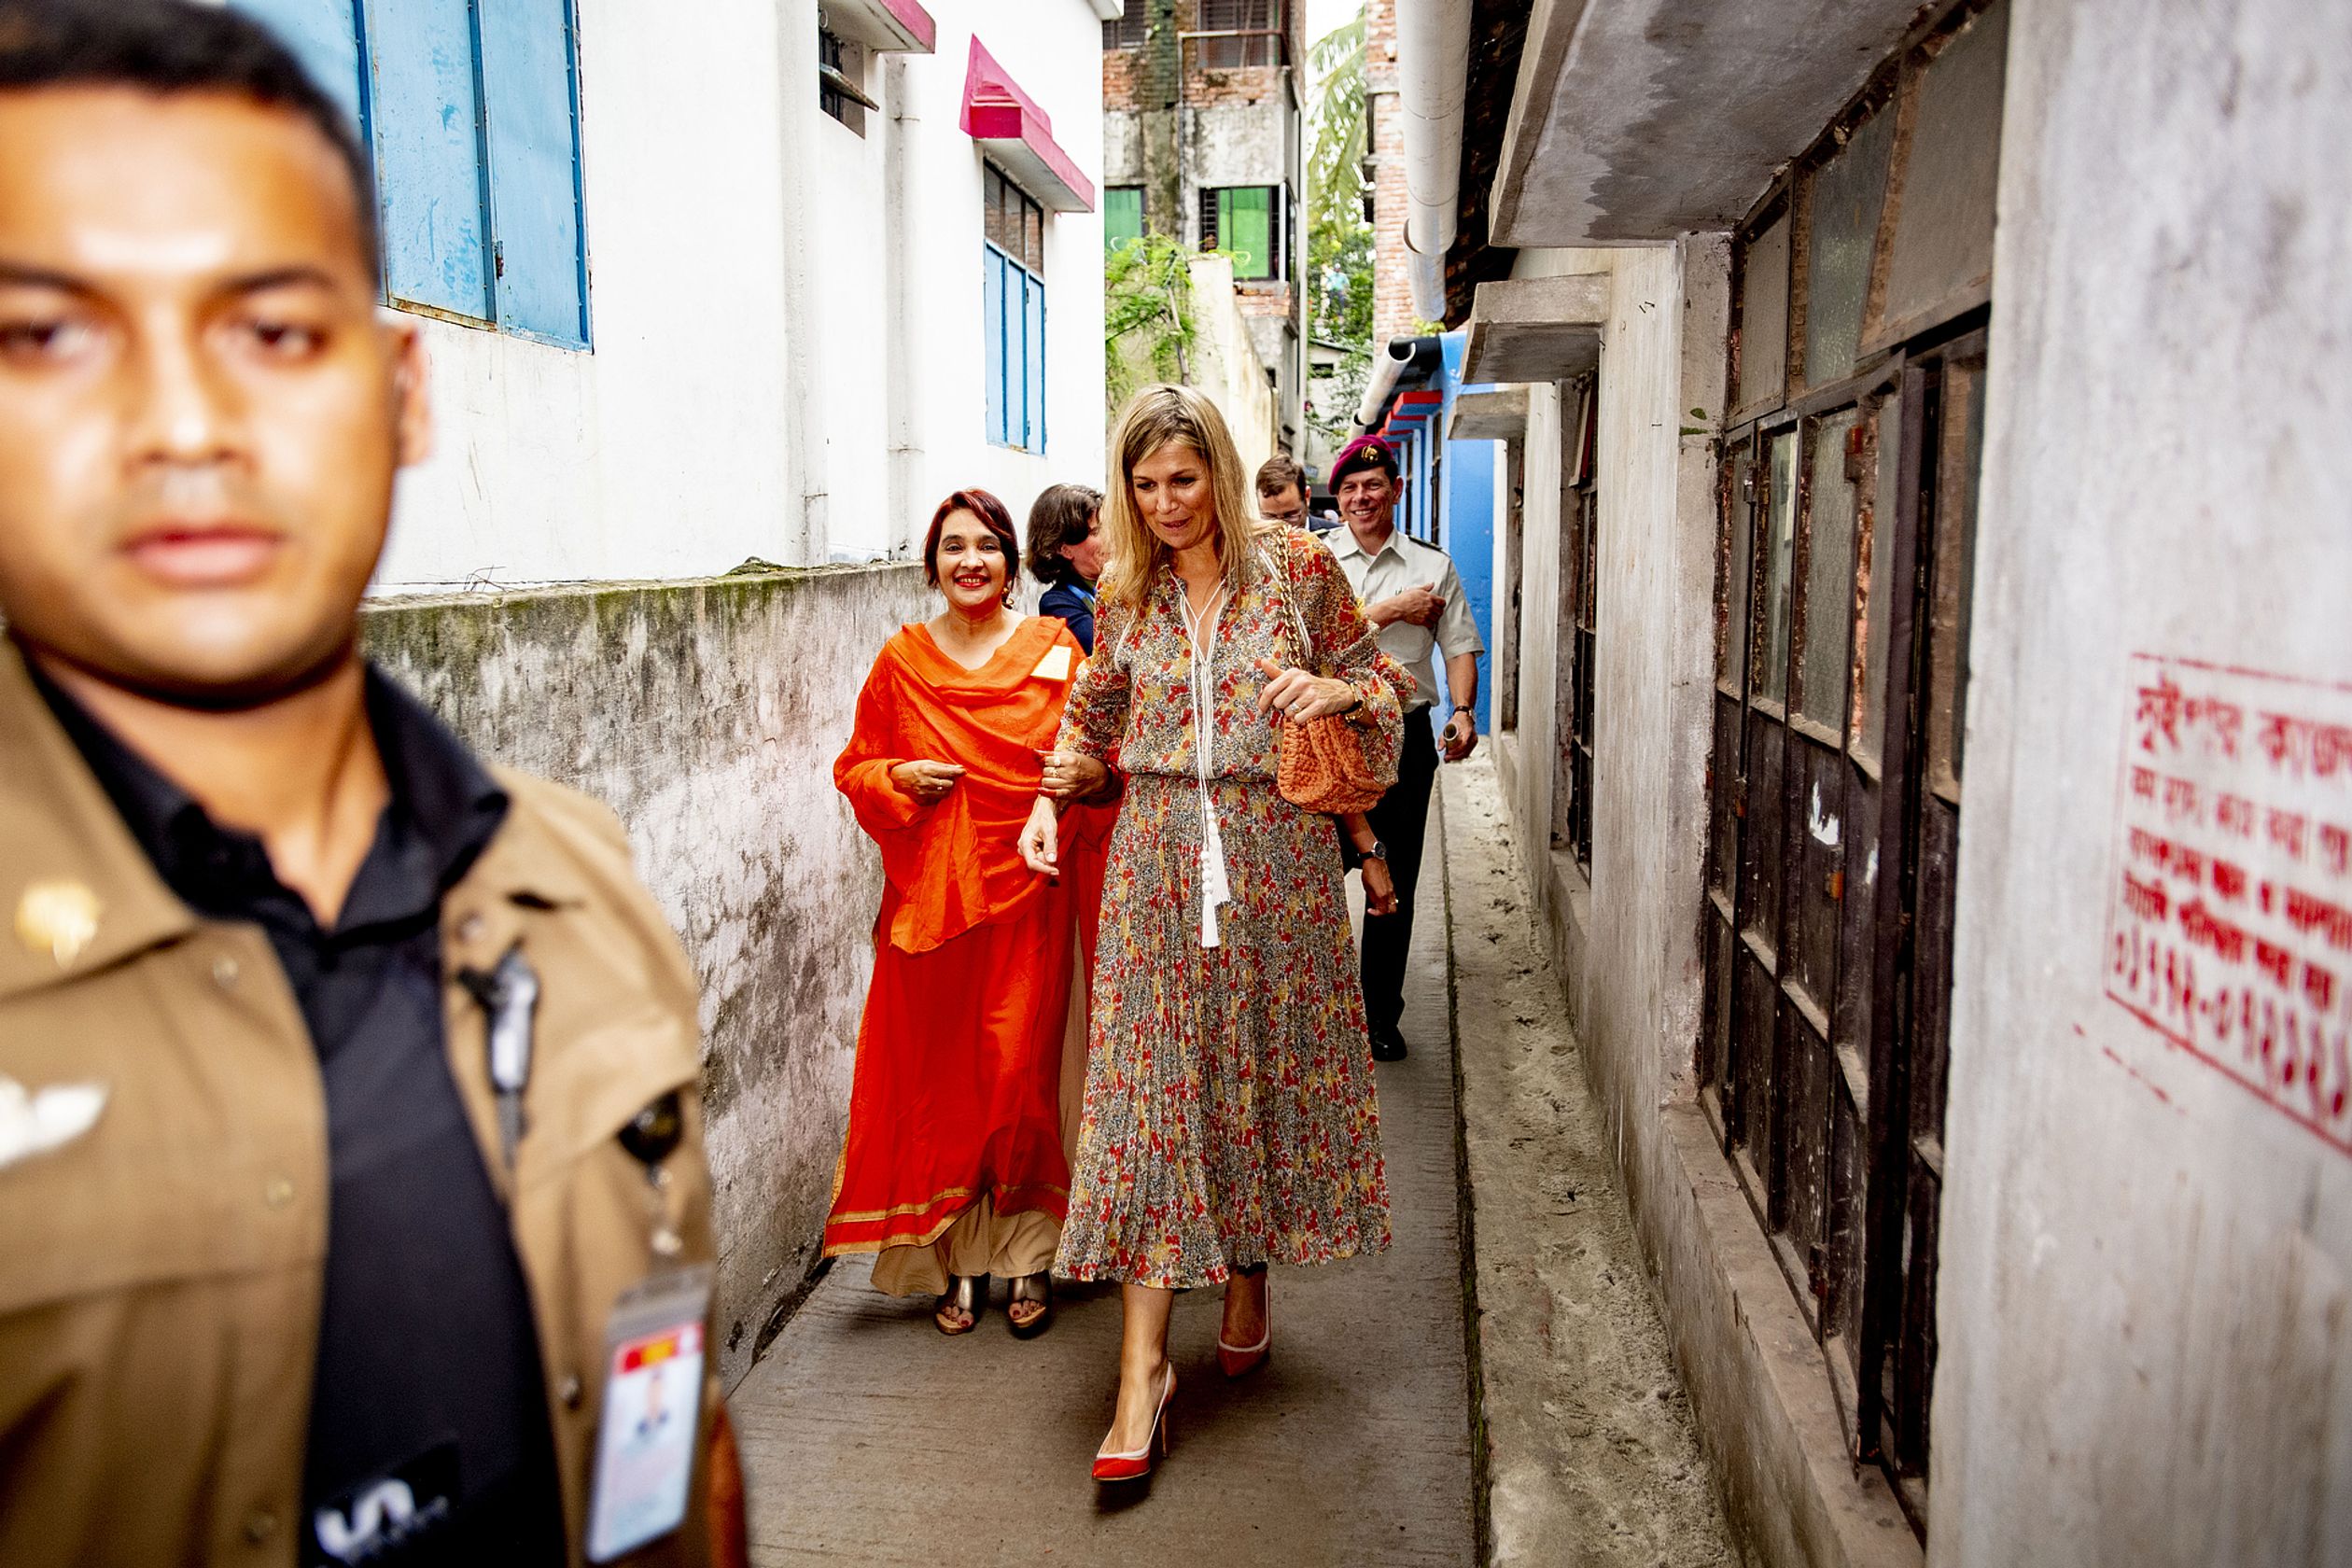 Ook reisde de koningin naar Bangladesh voor haar VN-werk. Ze droeg een kleurige lange japon.